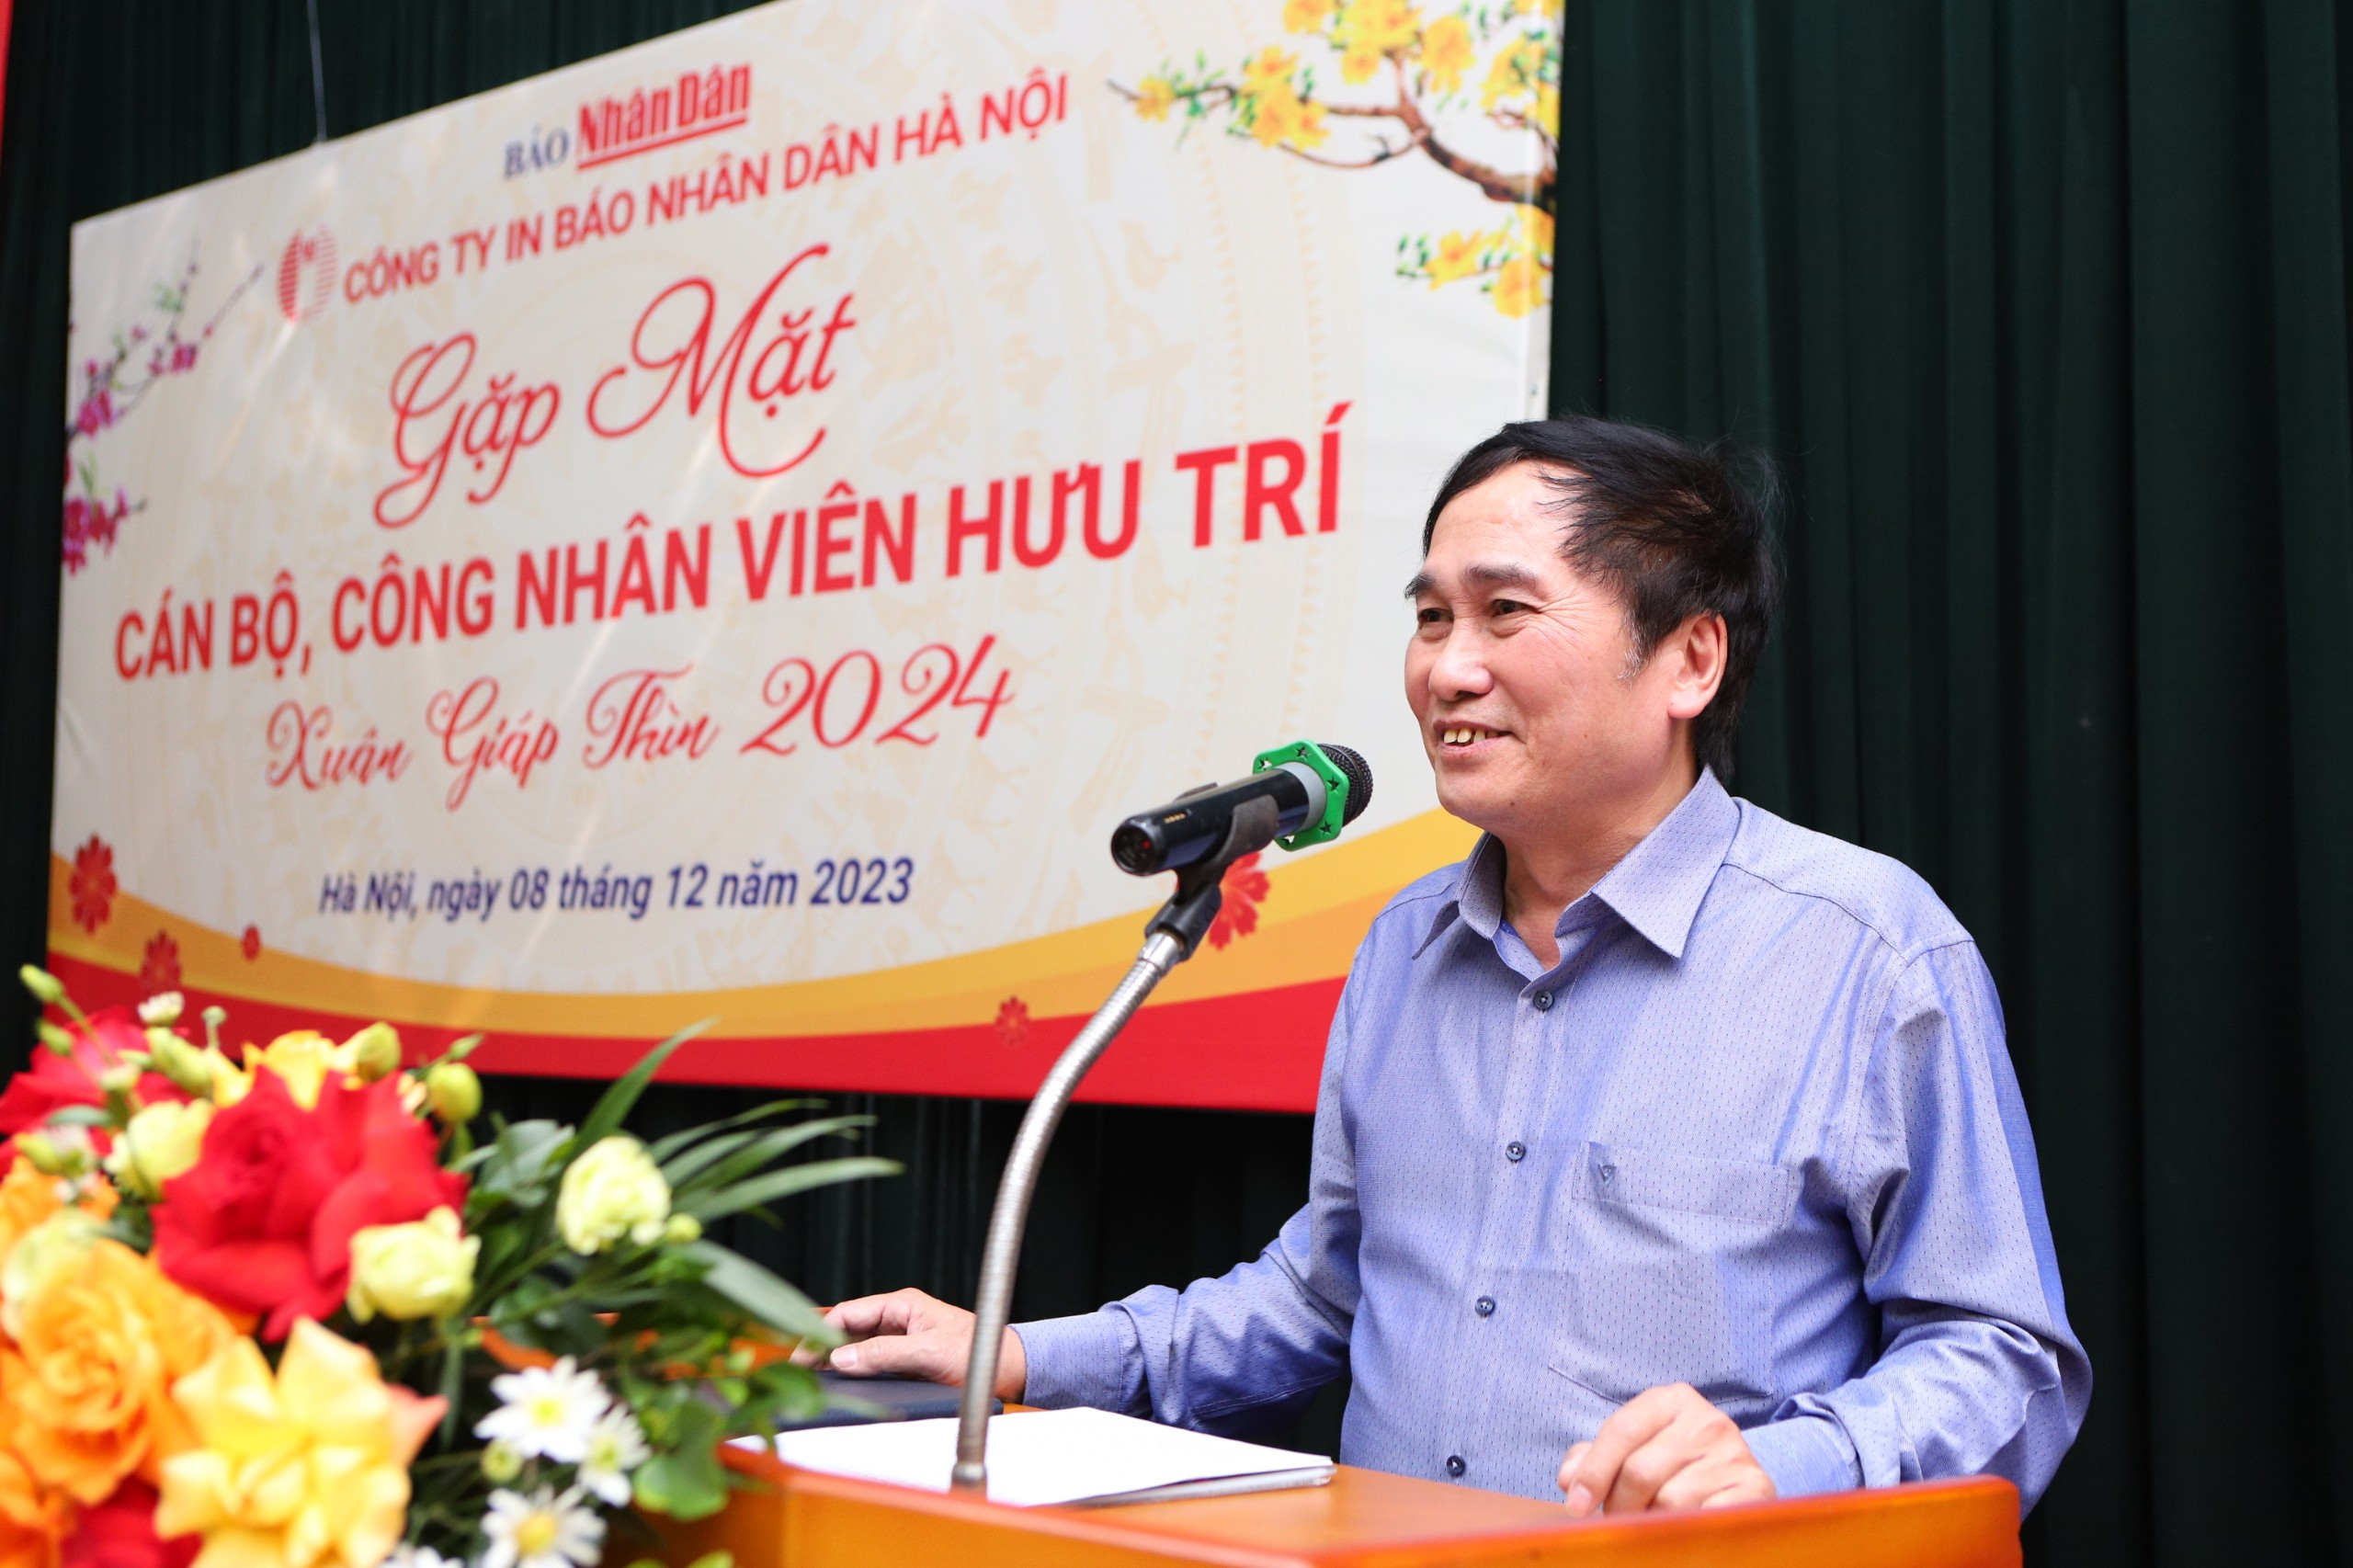 Tổ chức gặp mặt cán bộ công nhân viên hưu trí  Công ty In Báo Nhân Dân Hà Nội năm 2023